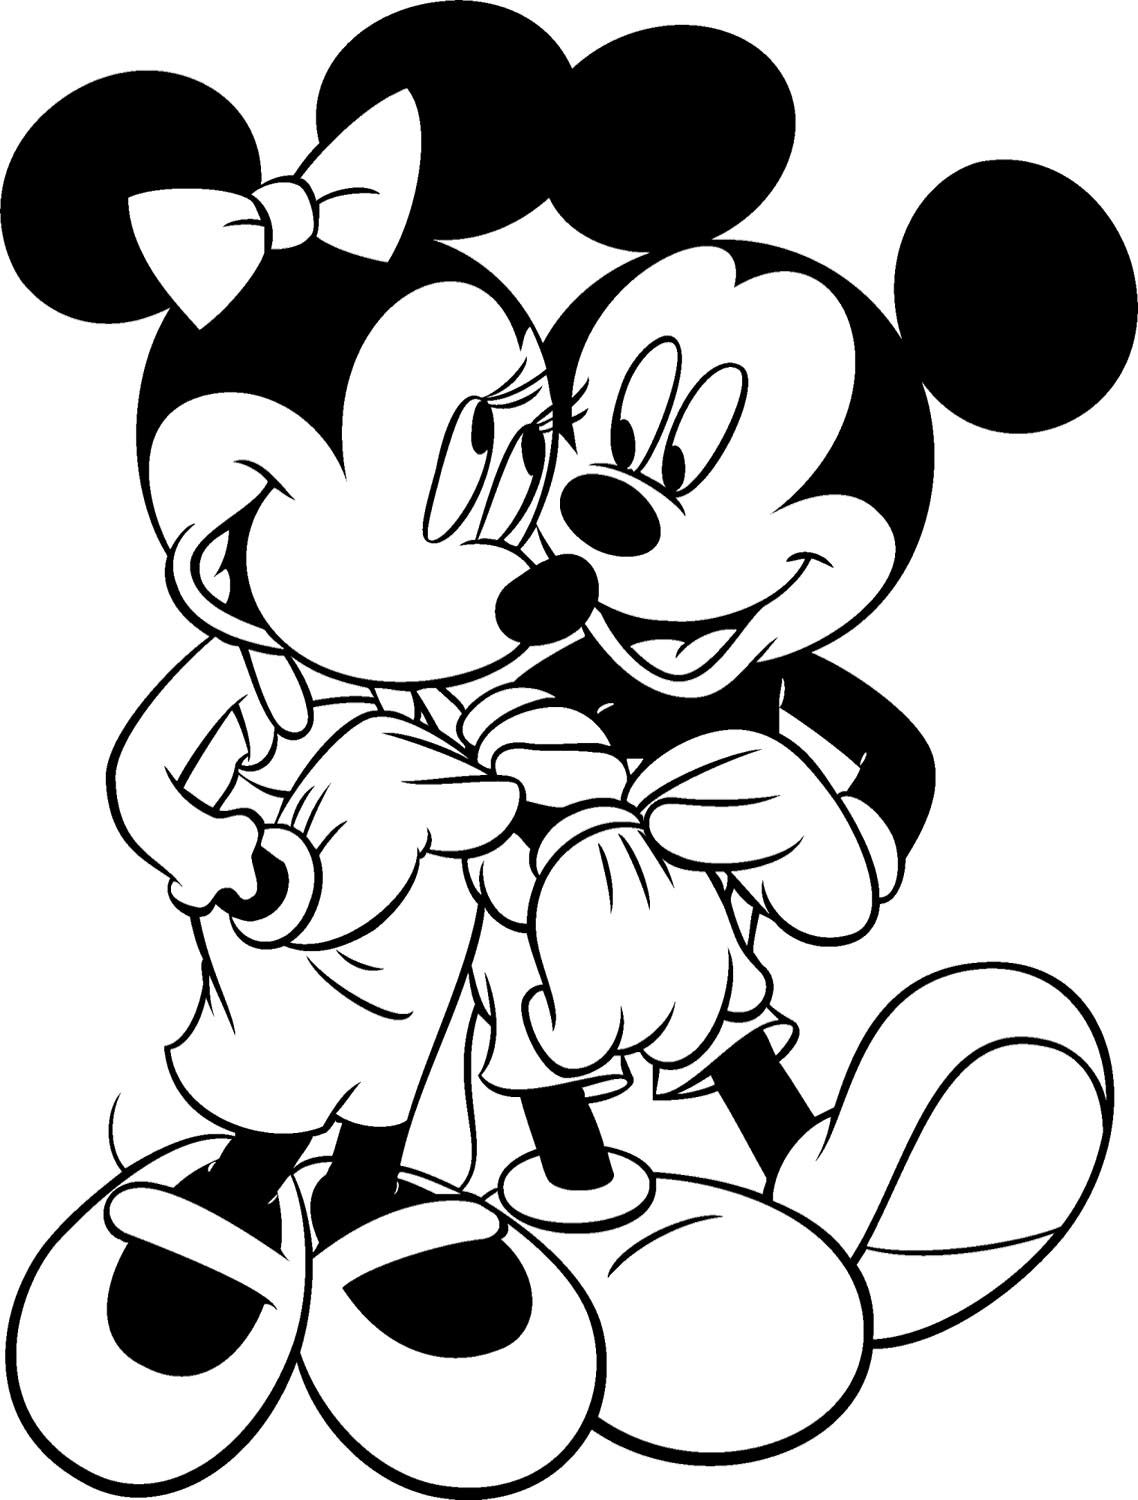 Tranh tô màu chuột Mickey và bạn gái đẹp